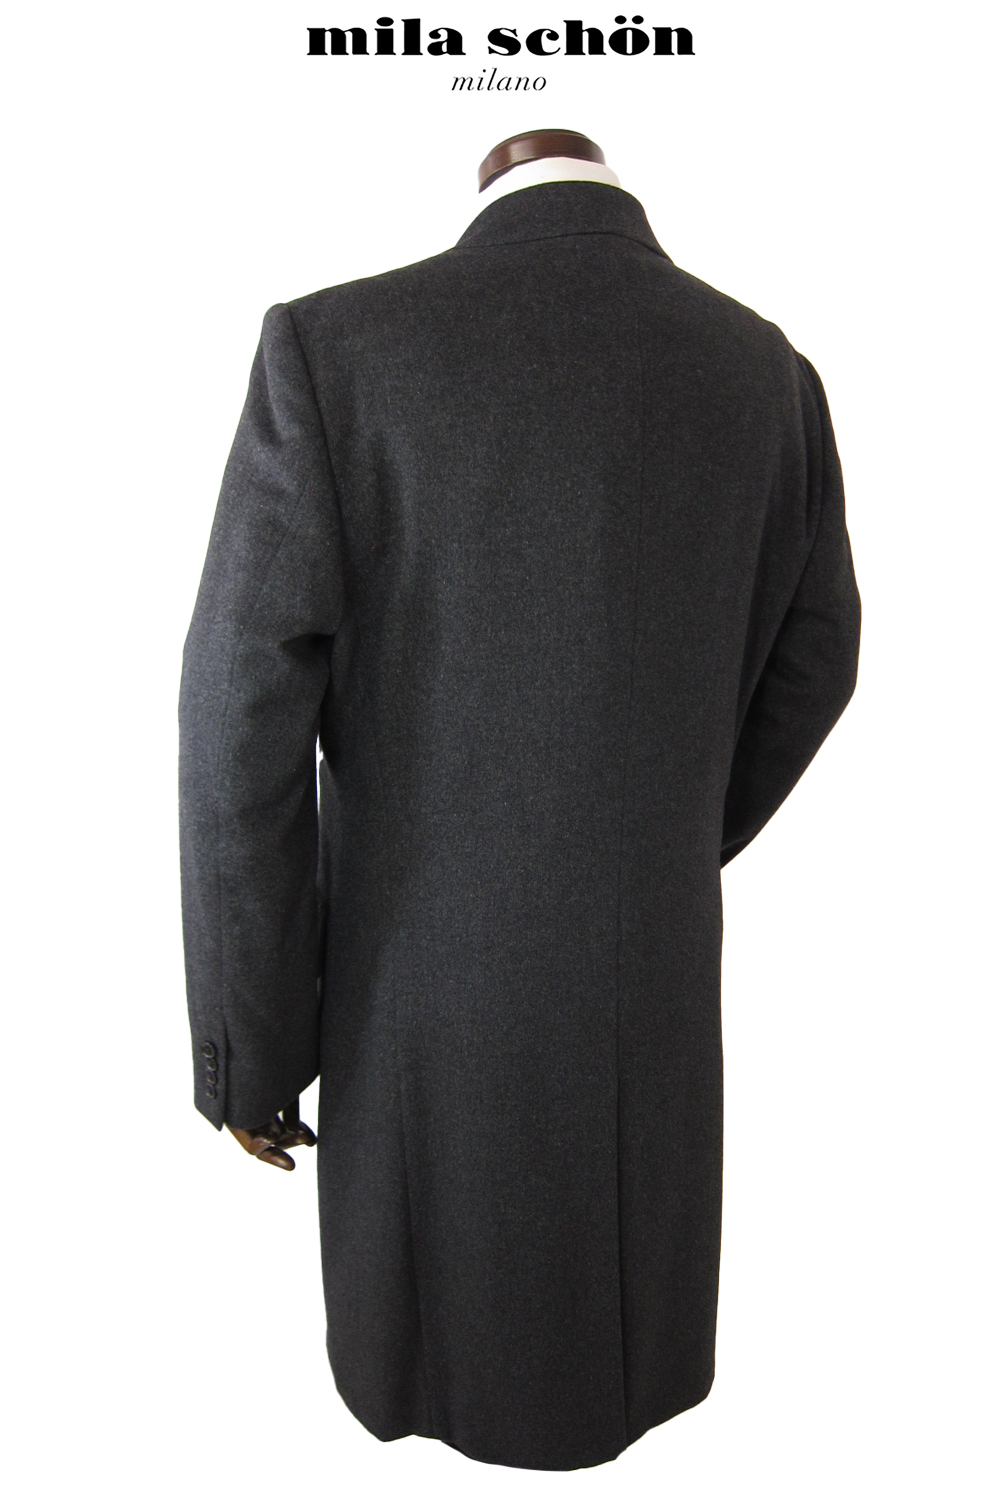  Mila Schon пальто осень-зима предмет кашемир 100% Пальто Честерфилд длинный длина пальто серый легкий сделано в Японии производитель стандартный товар 